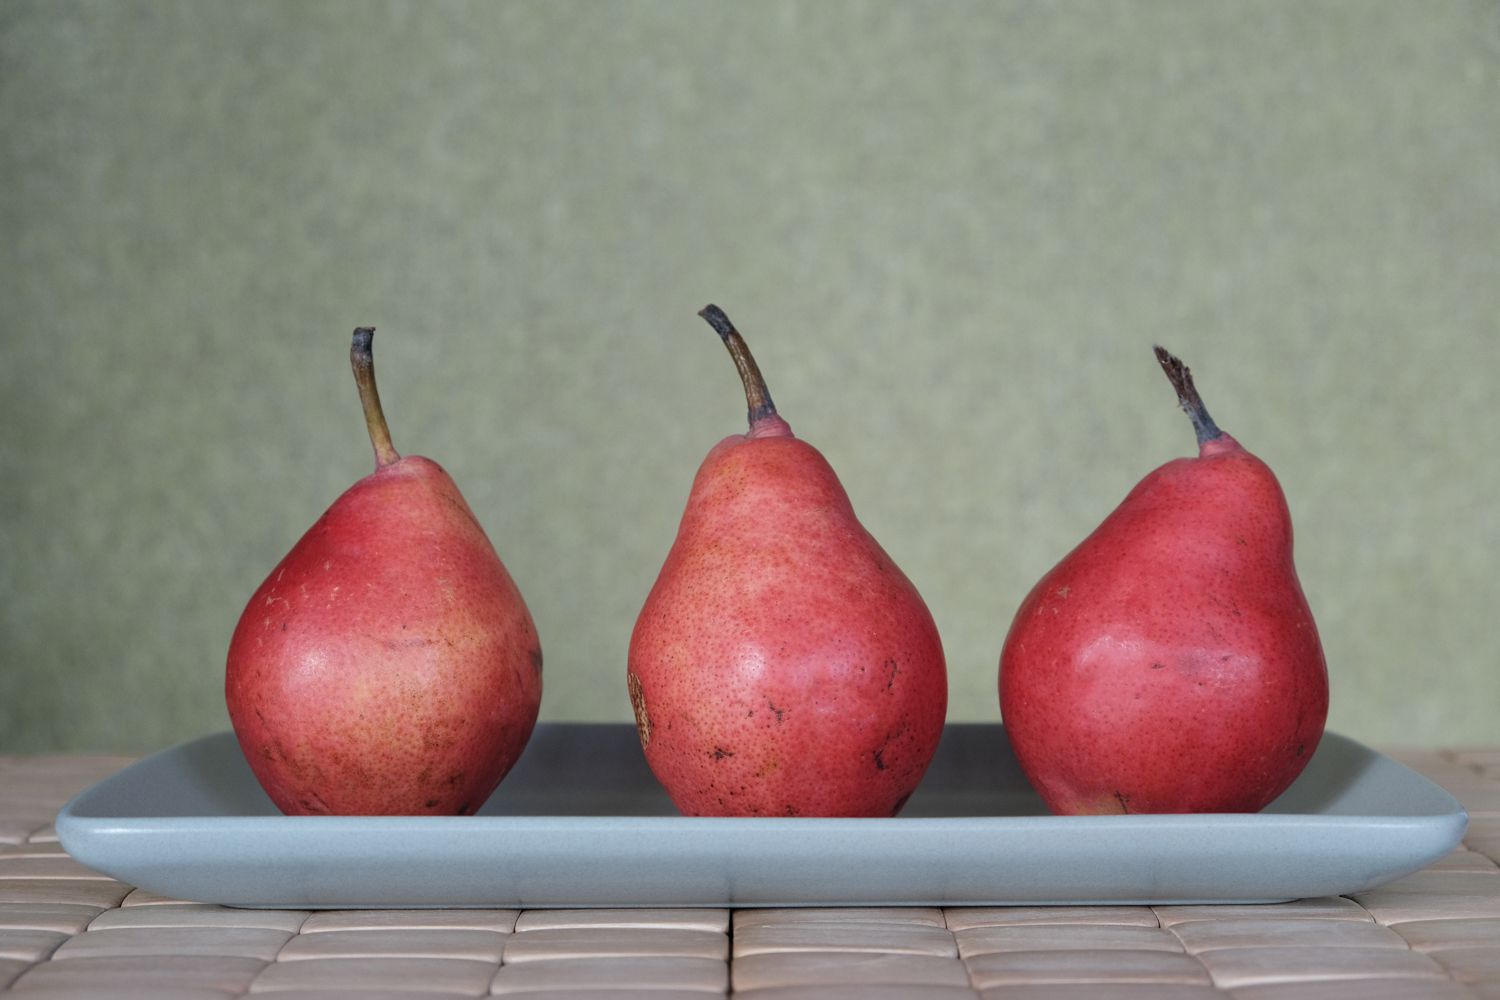 tres peras rojas de Anjou sentadas en posición vertical en una bandeja gris